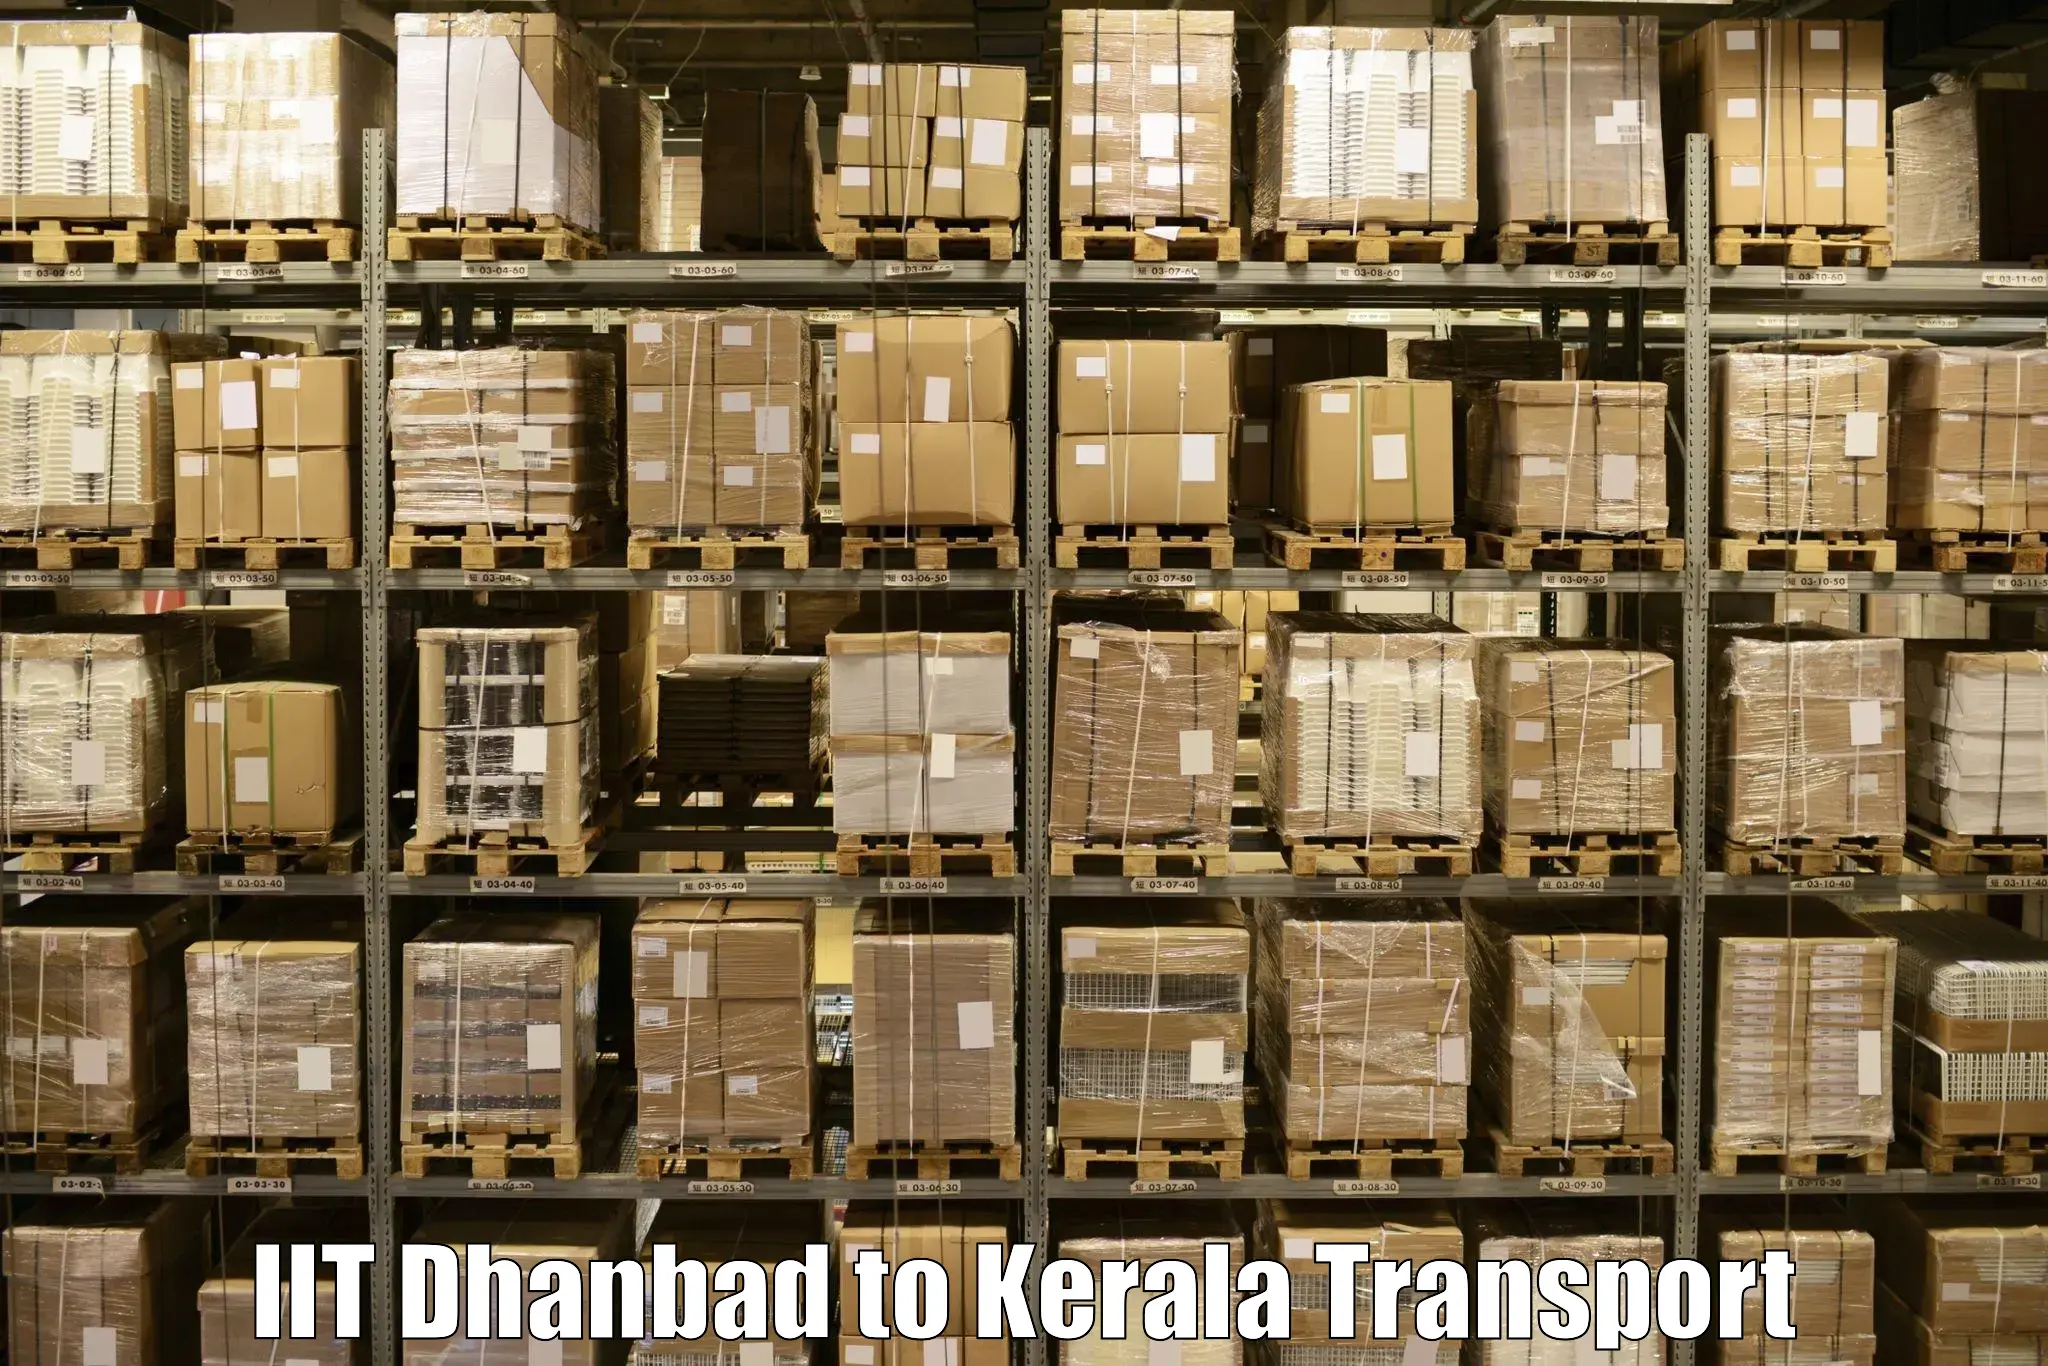 Shipping partner IIT Dhanbad to Munnar